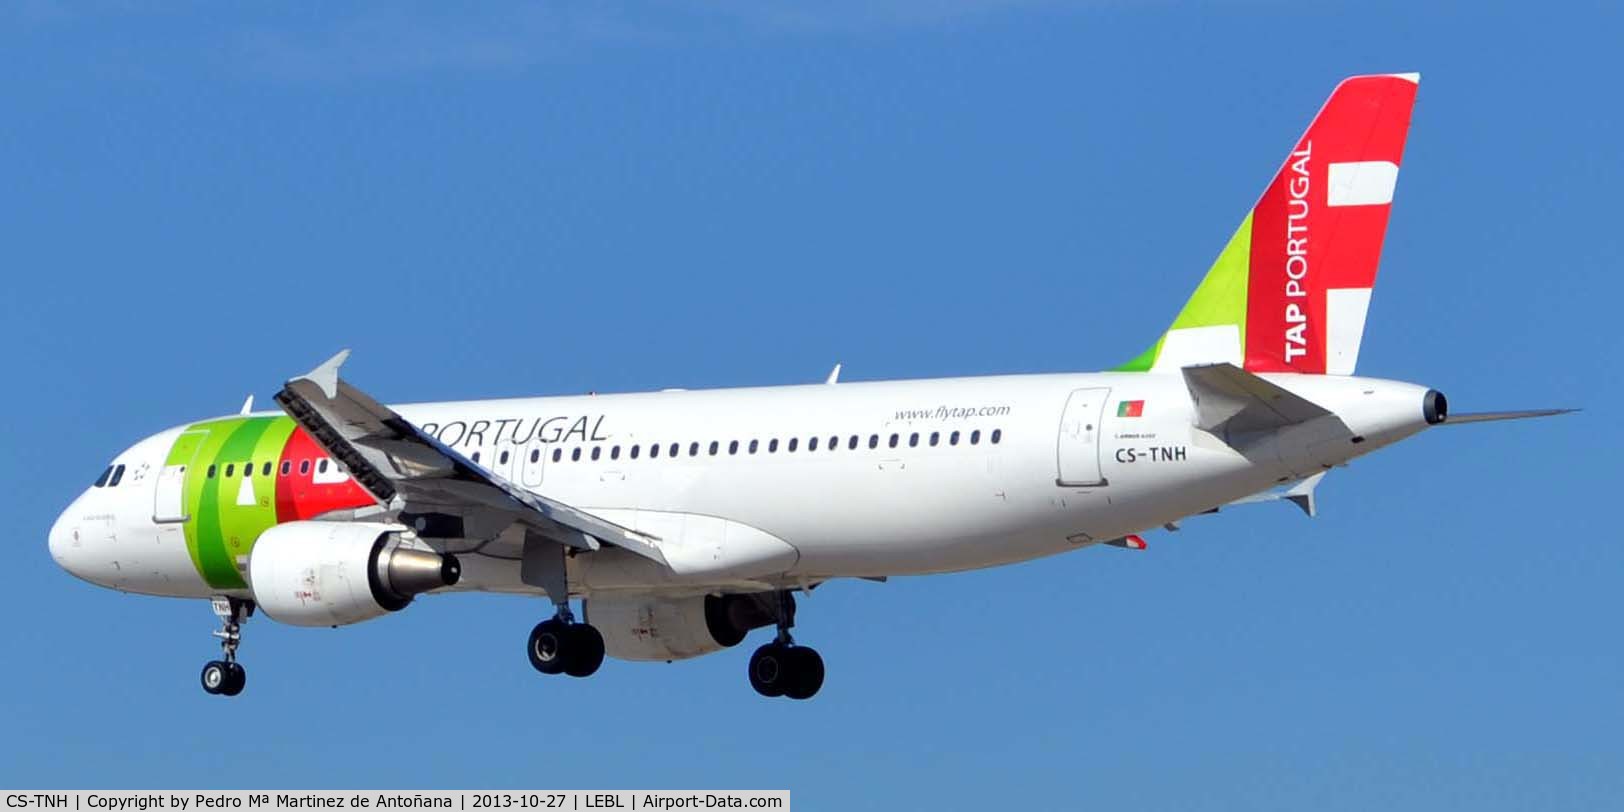 CS-TNH, 1999 Airbus A320-214 C/N 0960, Aeropuerto El Prat Barcelona
Nombre: - Almada Negreiros